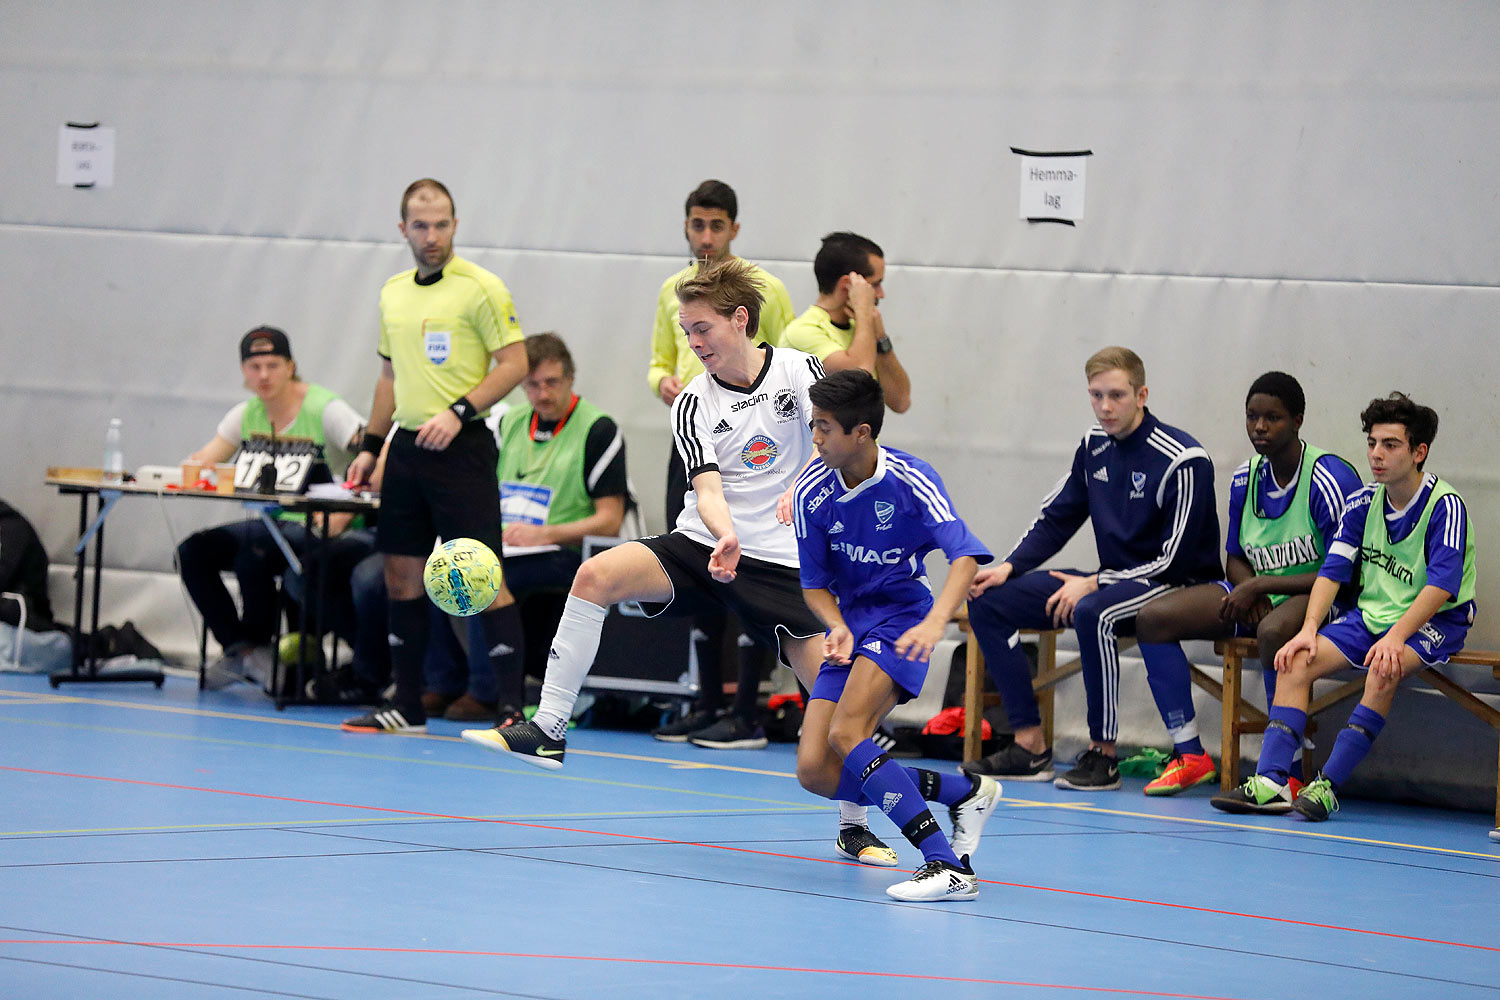 Skövde Futsalcup Herrjuniorer IFK Skövde FK-Skoftebyns IF,herr,Arena Skövde,Skövde,Sverige,Skövde Futsalcup 2016,Futsal,2016,142080